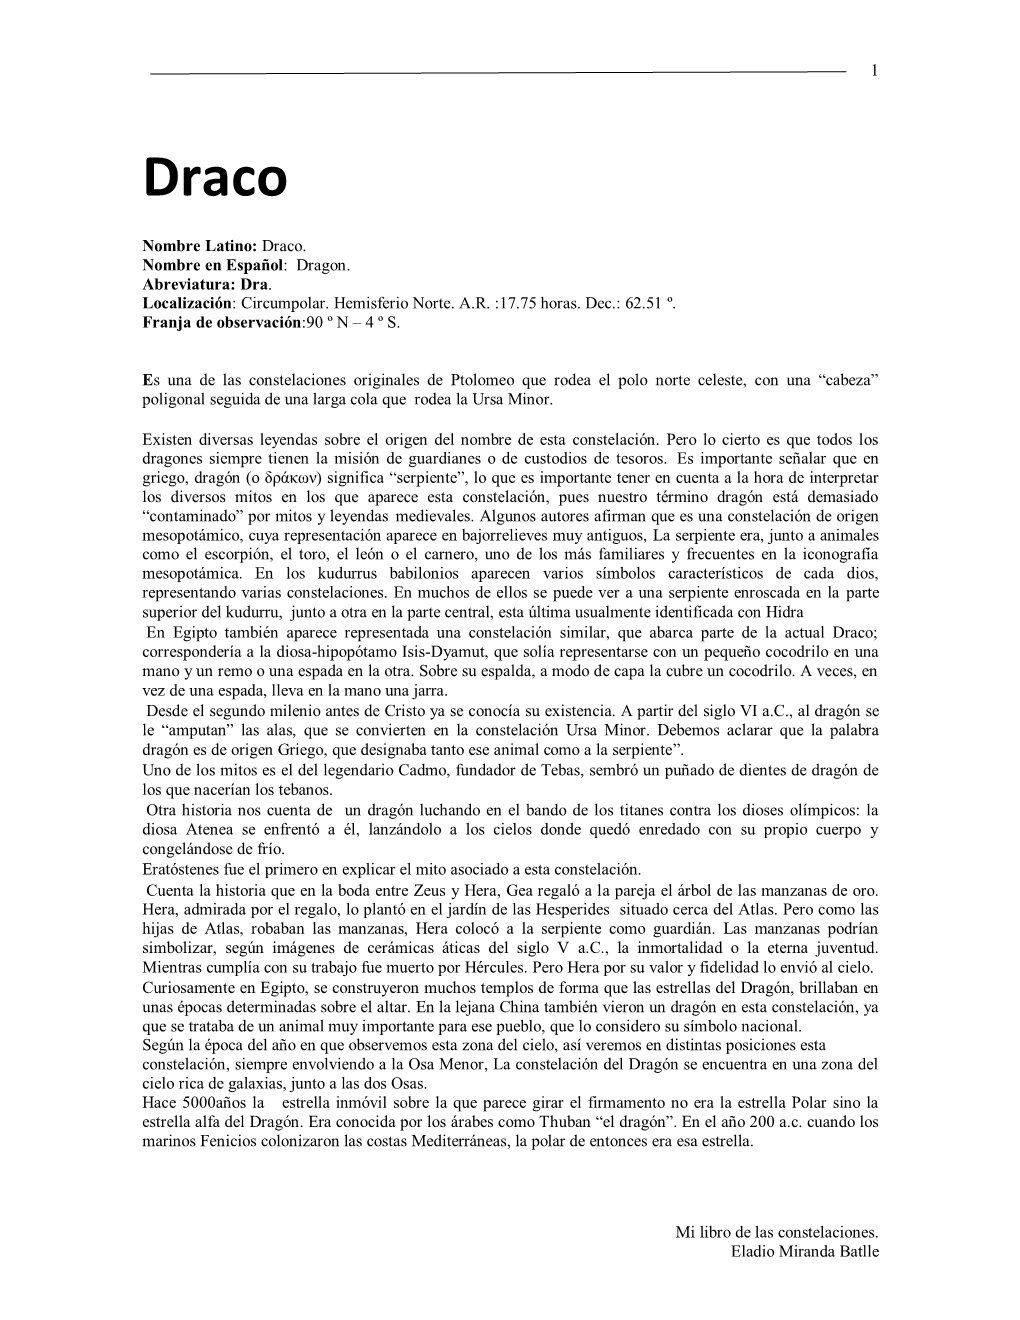 Draco. Nombre En Español: Dragon. Abreviatura: Dra. Localización: Circumpolar